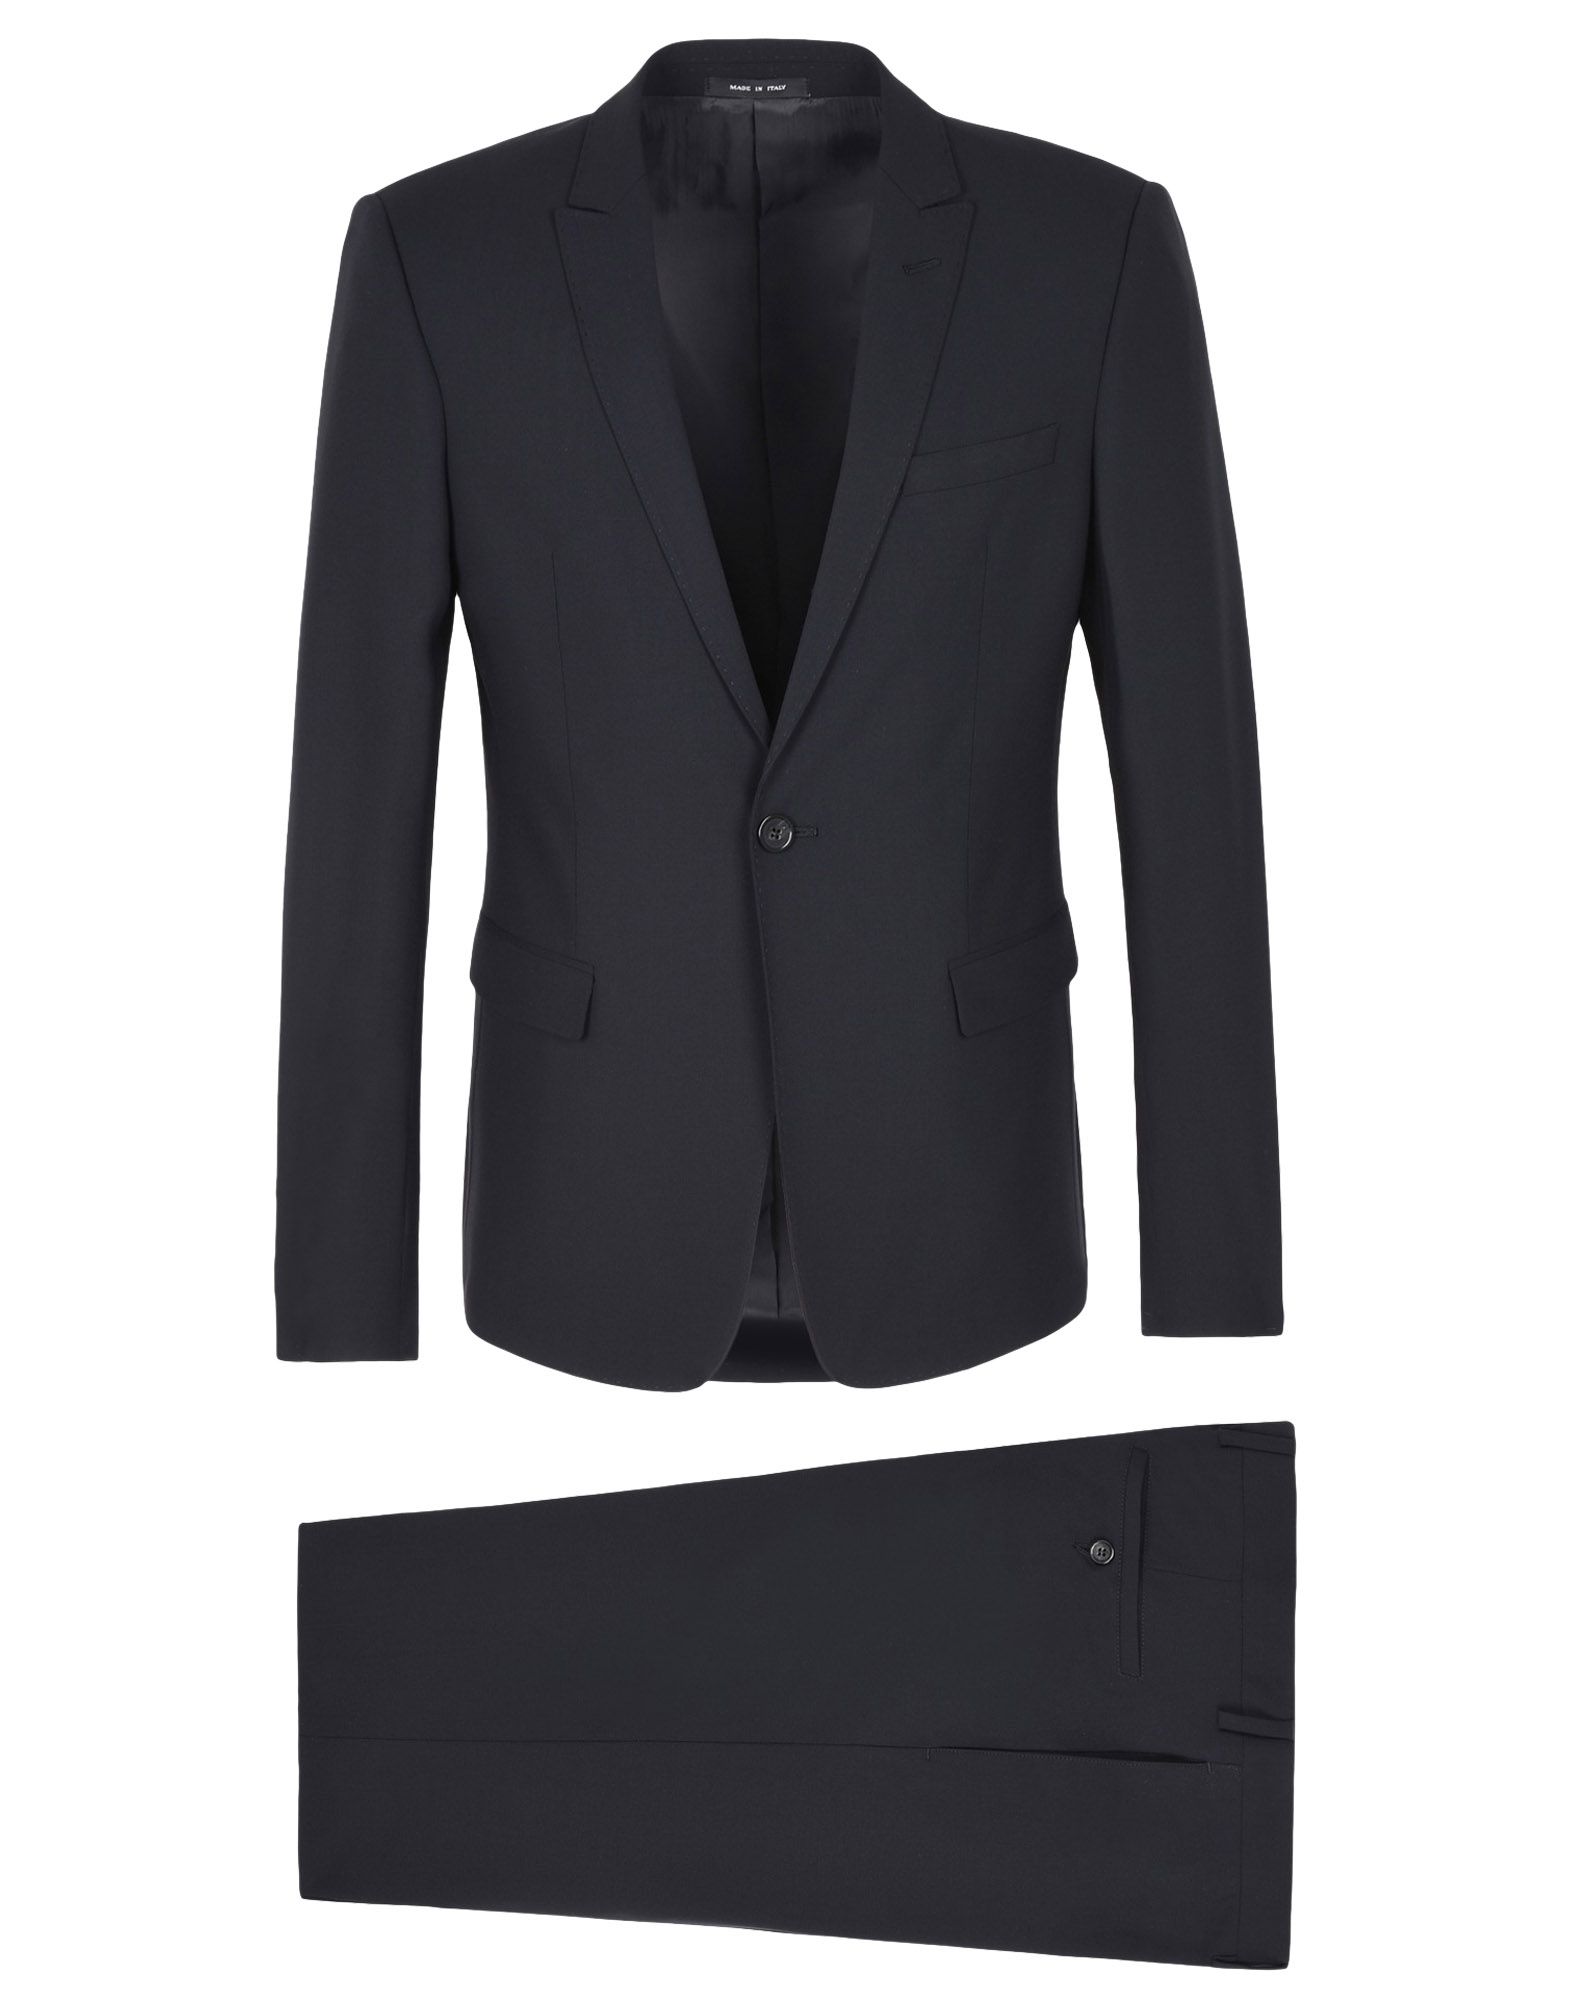 EMPORIO ARMANI Suits - Item 49360180